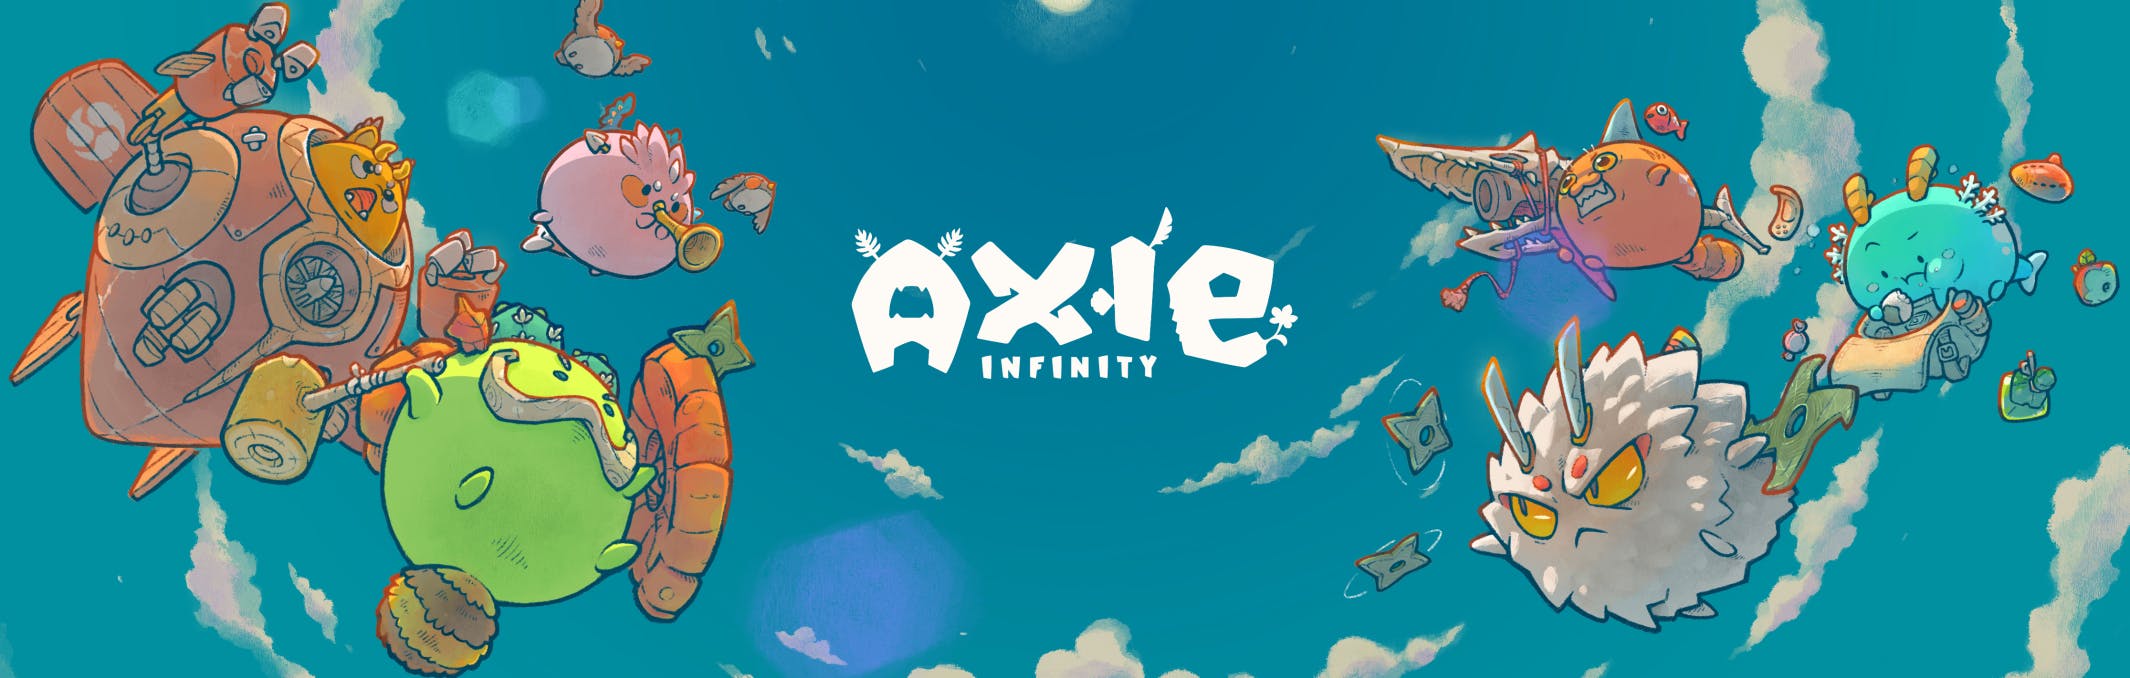 Axie Infinity media 3